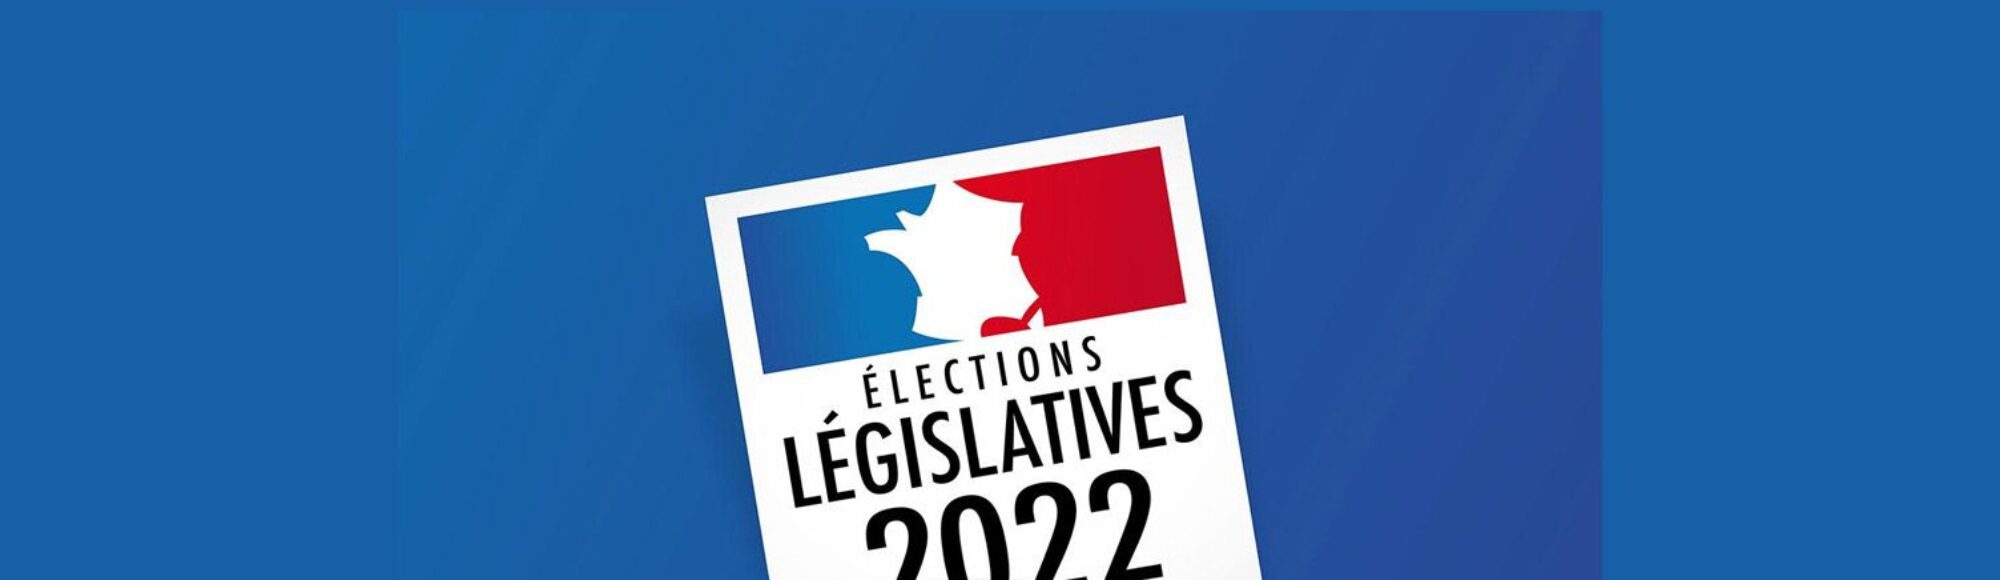 2022 elections legislatives RESULTATS Wimille 1500px dans le Boulonnais et le pas de calais2